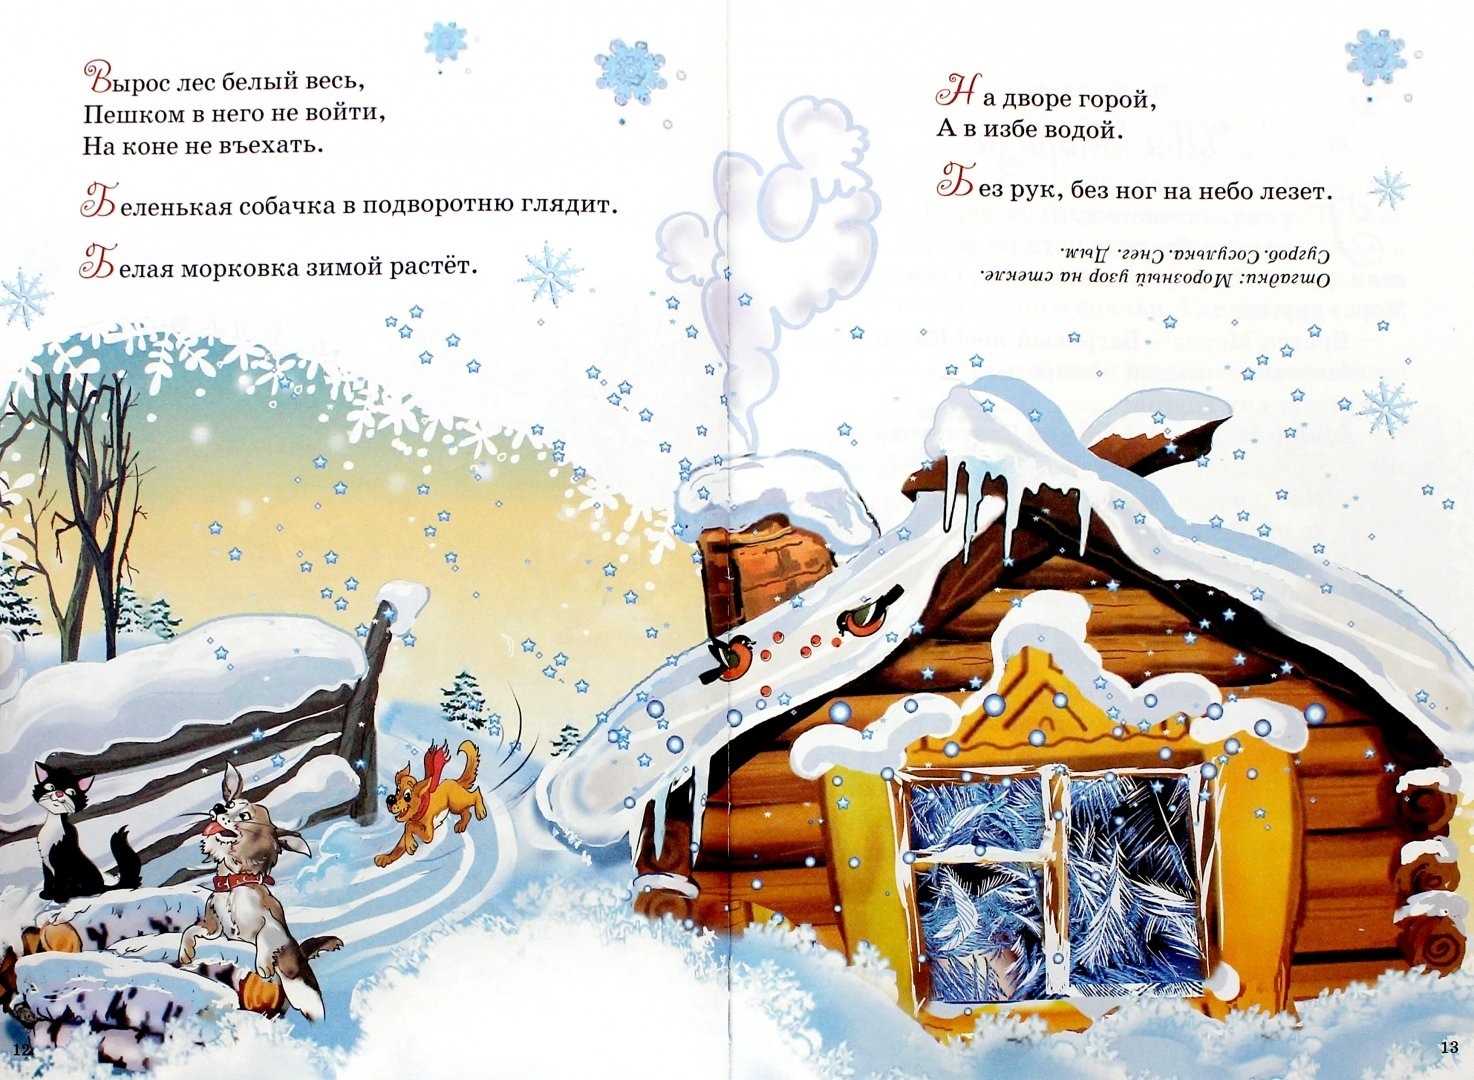 Встреча зимы. Встреча зимы Никитин. Сказка встреча зимы. Иллюстрация к стихотворению Никитина встреча зимы. Стихотворение Здравствуй гостья зима.